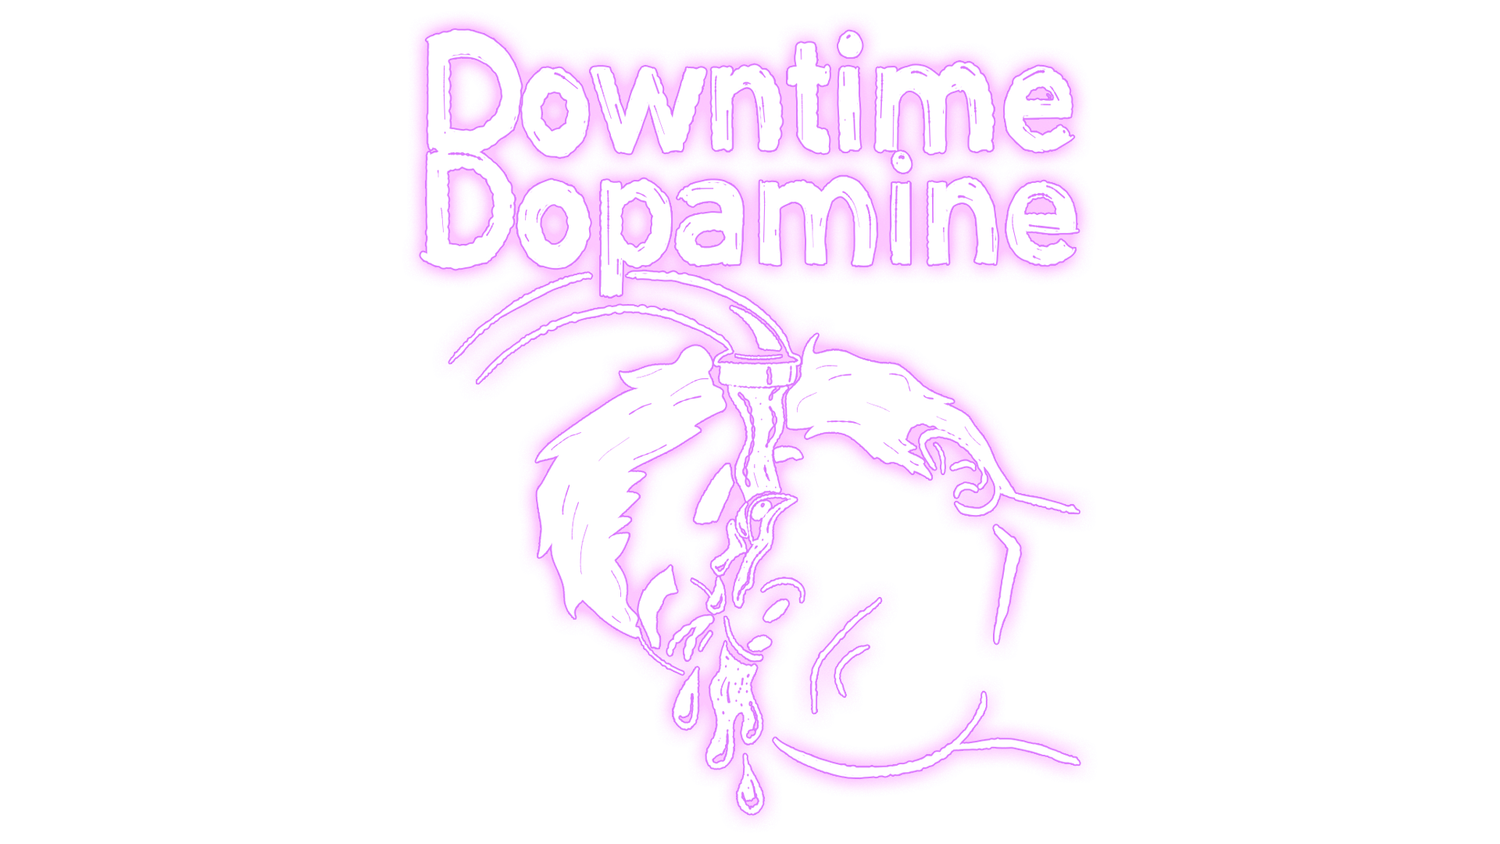 Downtime Dopamine